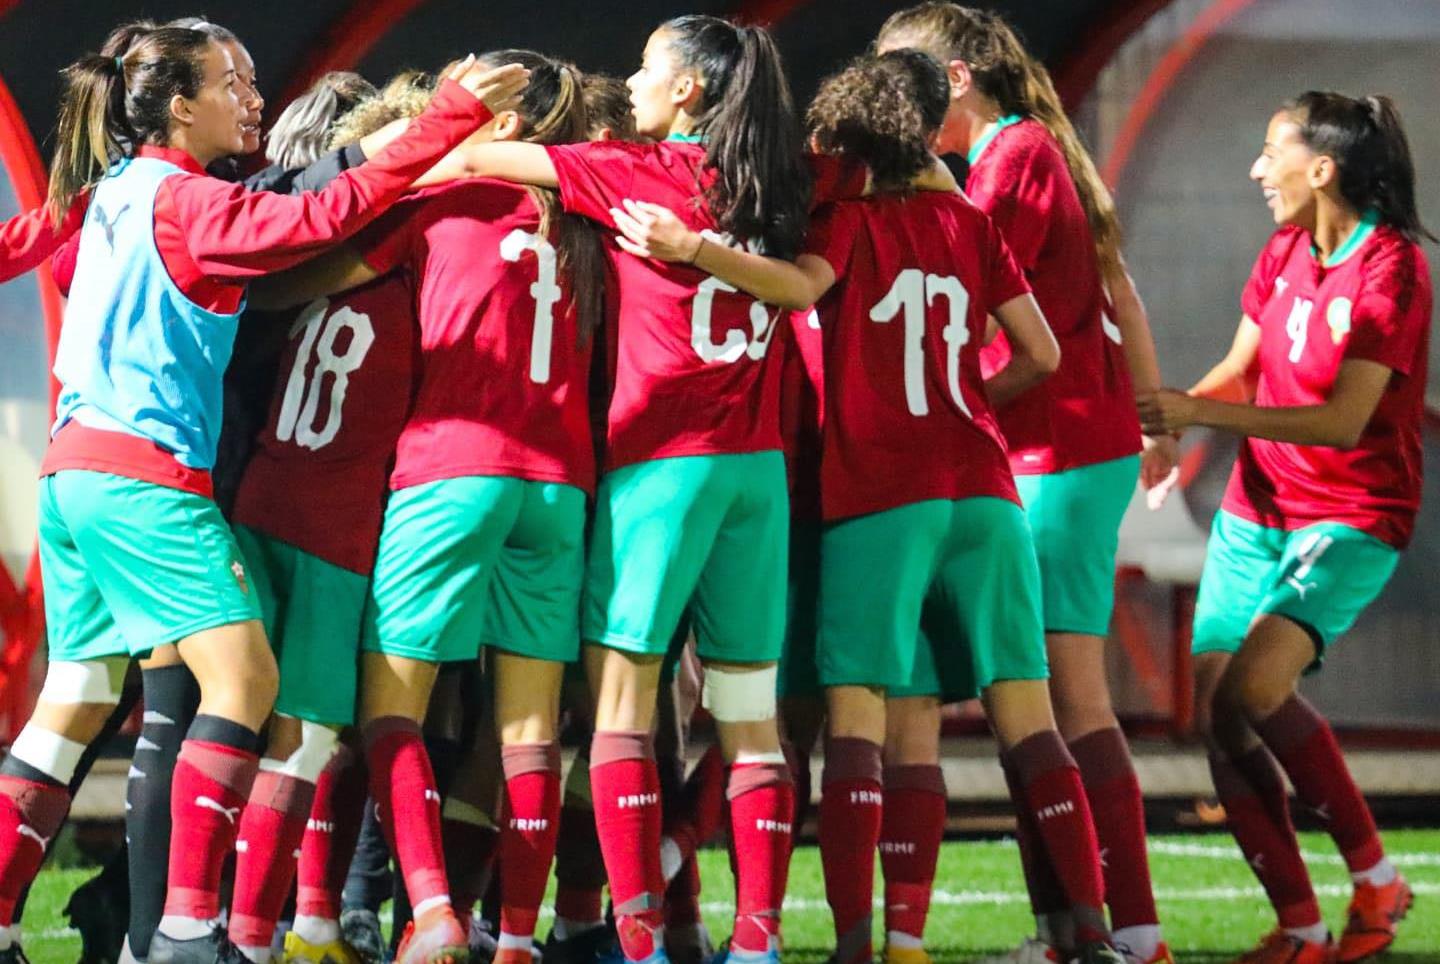 CAN Féminine Maroc 2022 : Le Maroc dans le groupe A avec le Burkina Faso, le Sénégal et l'Ouganda

